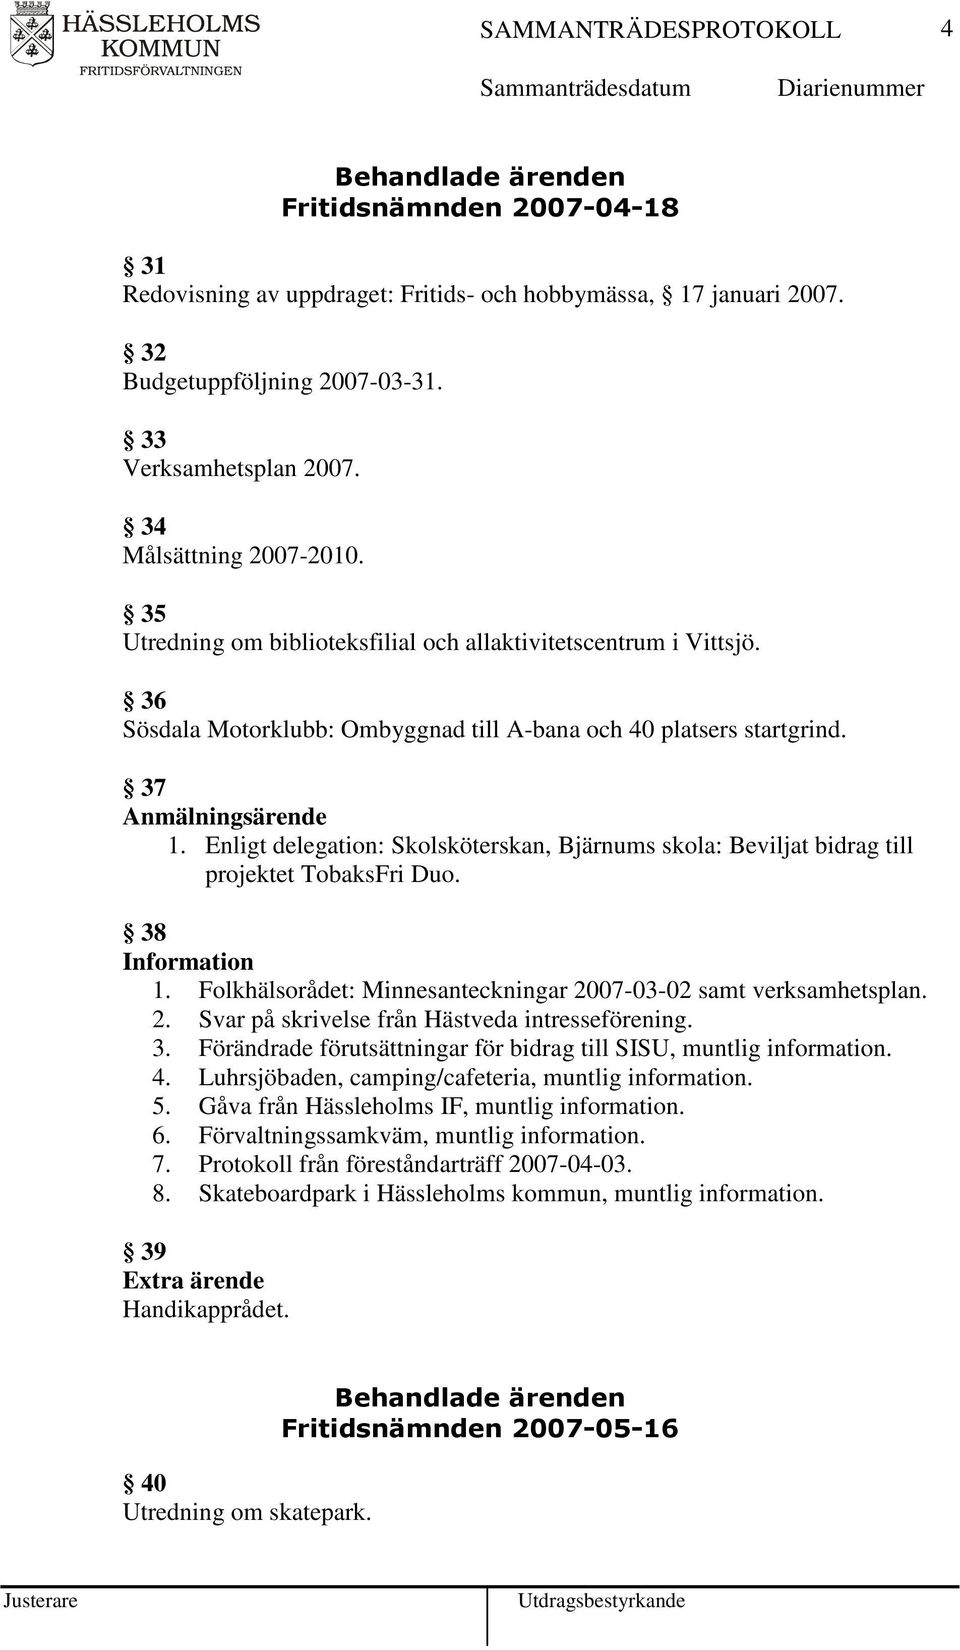 Enligt delegation: Skolsköterskan, Bjärnums skola: Beviljat bidrag till projektet TobaksFri Duo. 38 1. Folkhälsorådet: Minnesanteckningar 2007-03-02 samt verksamhetsplan. 2. Svar på skrivelse från Hästveda intresseförening.